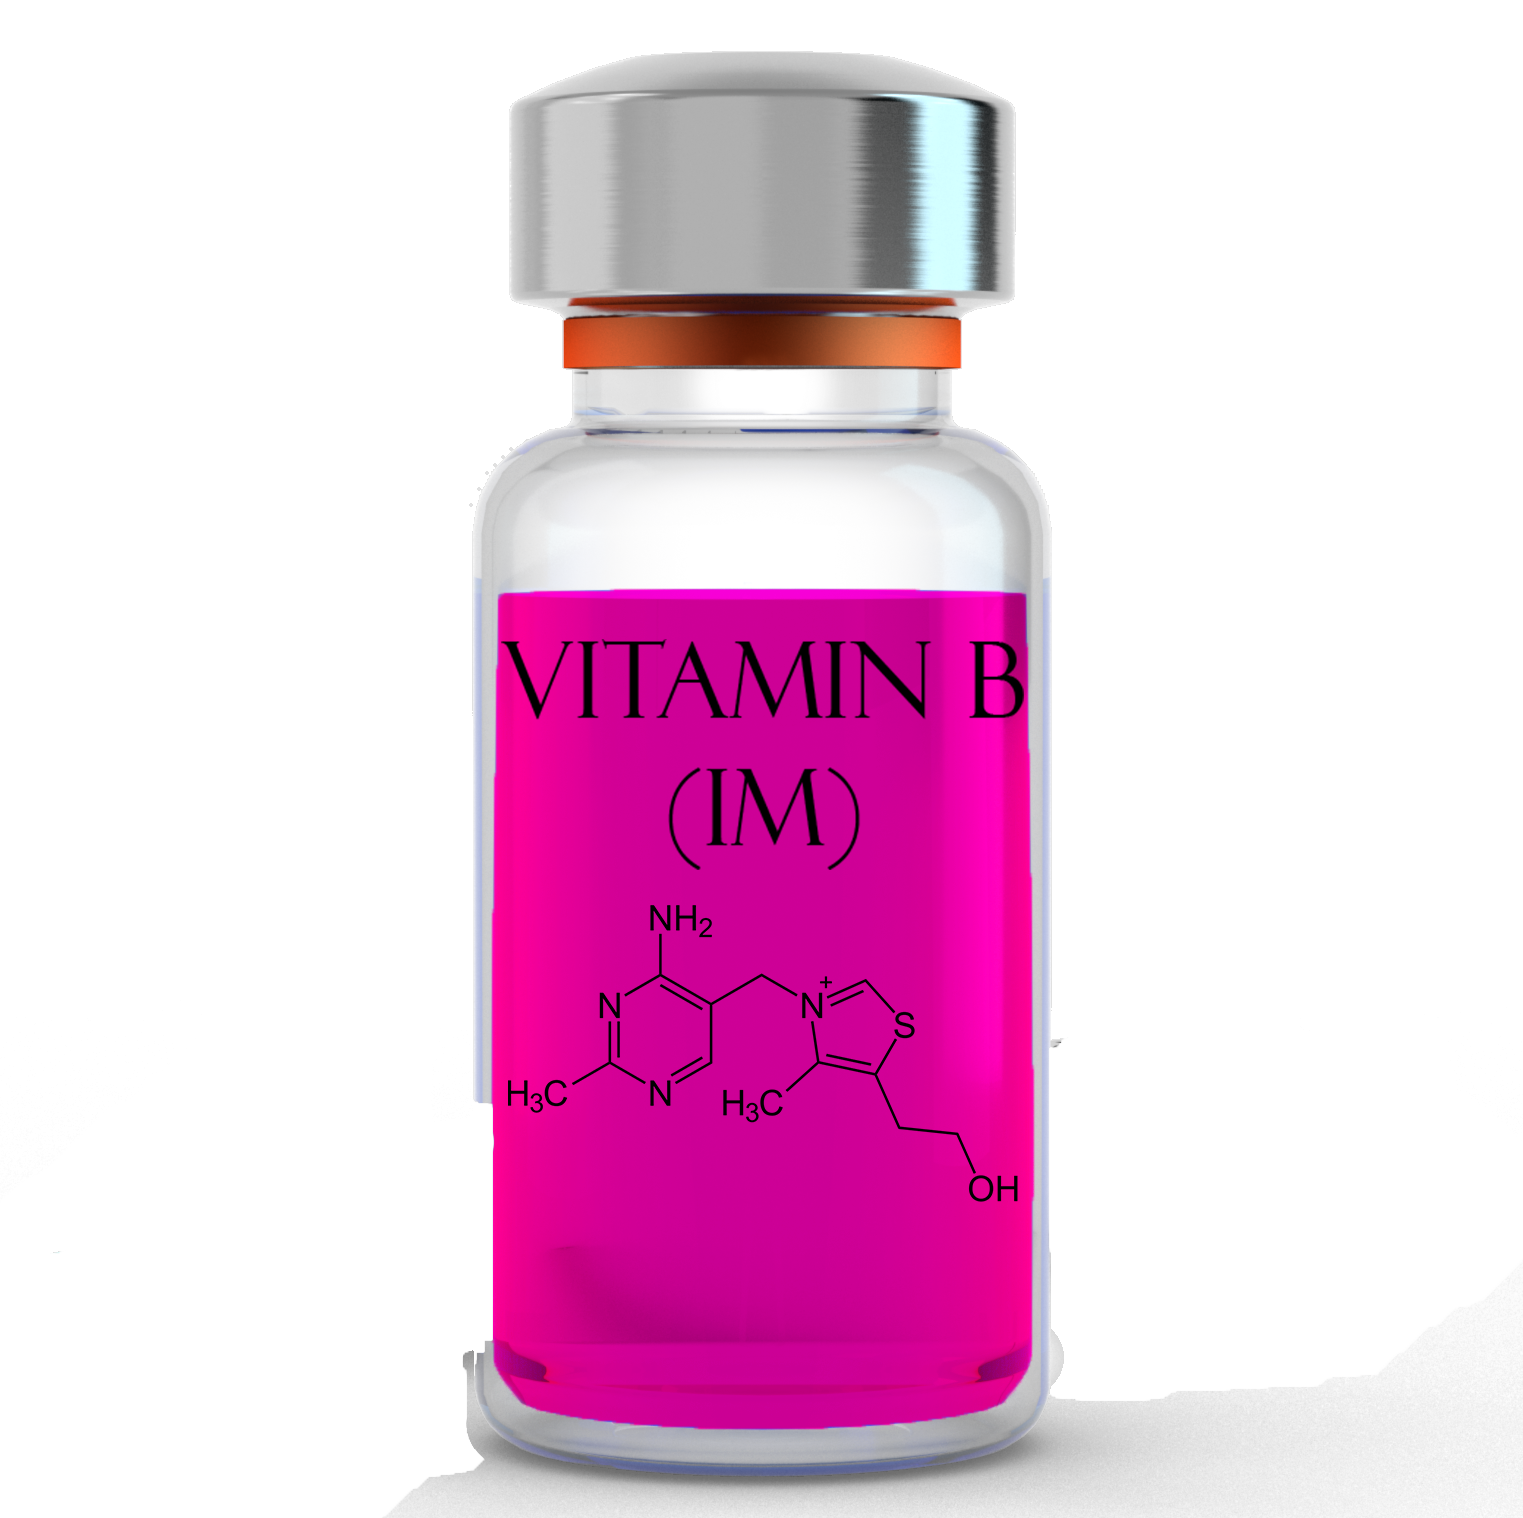 Essentia Vitamin B (IM)